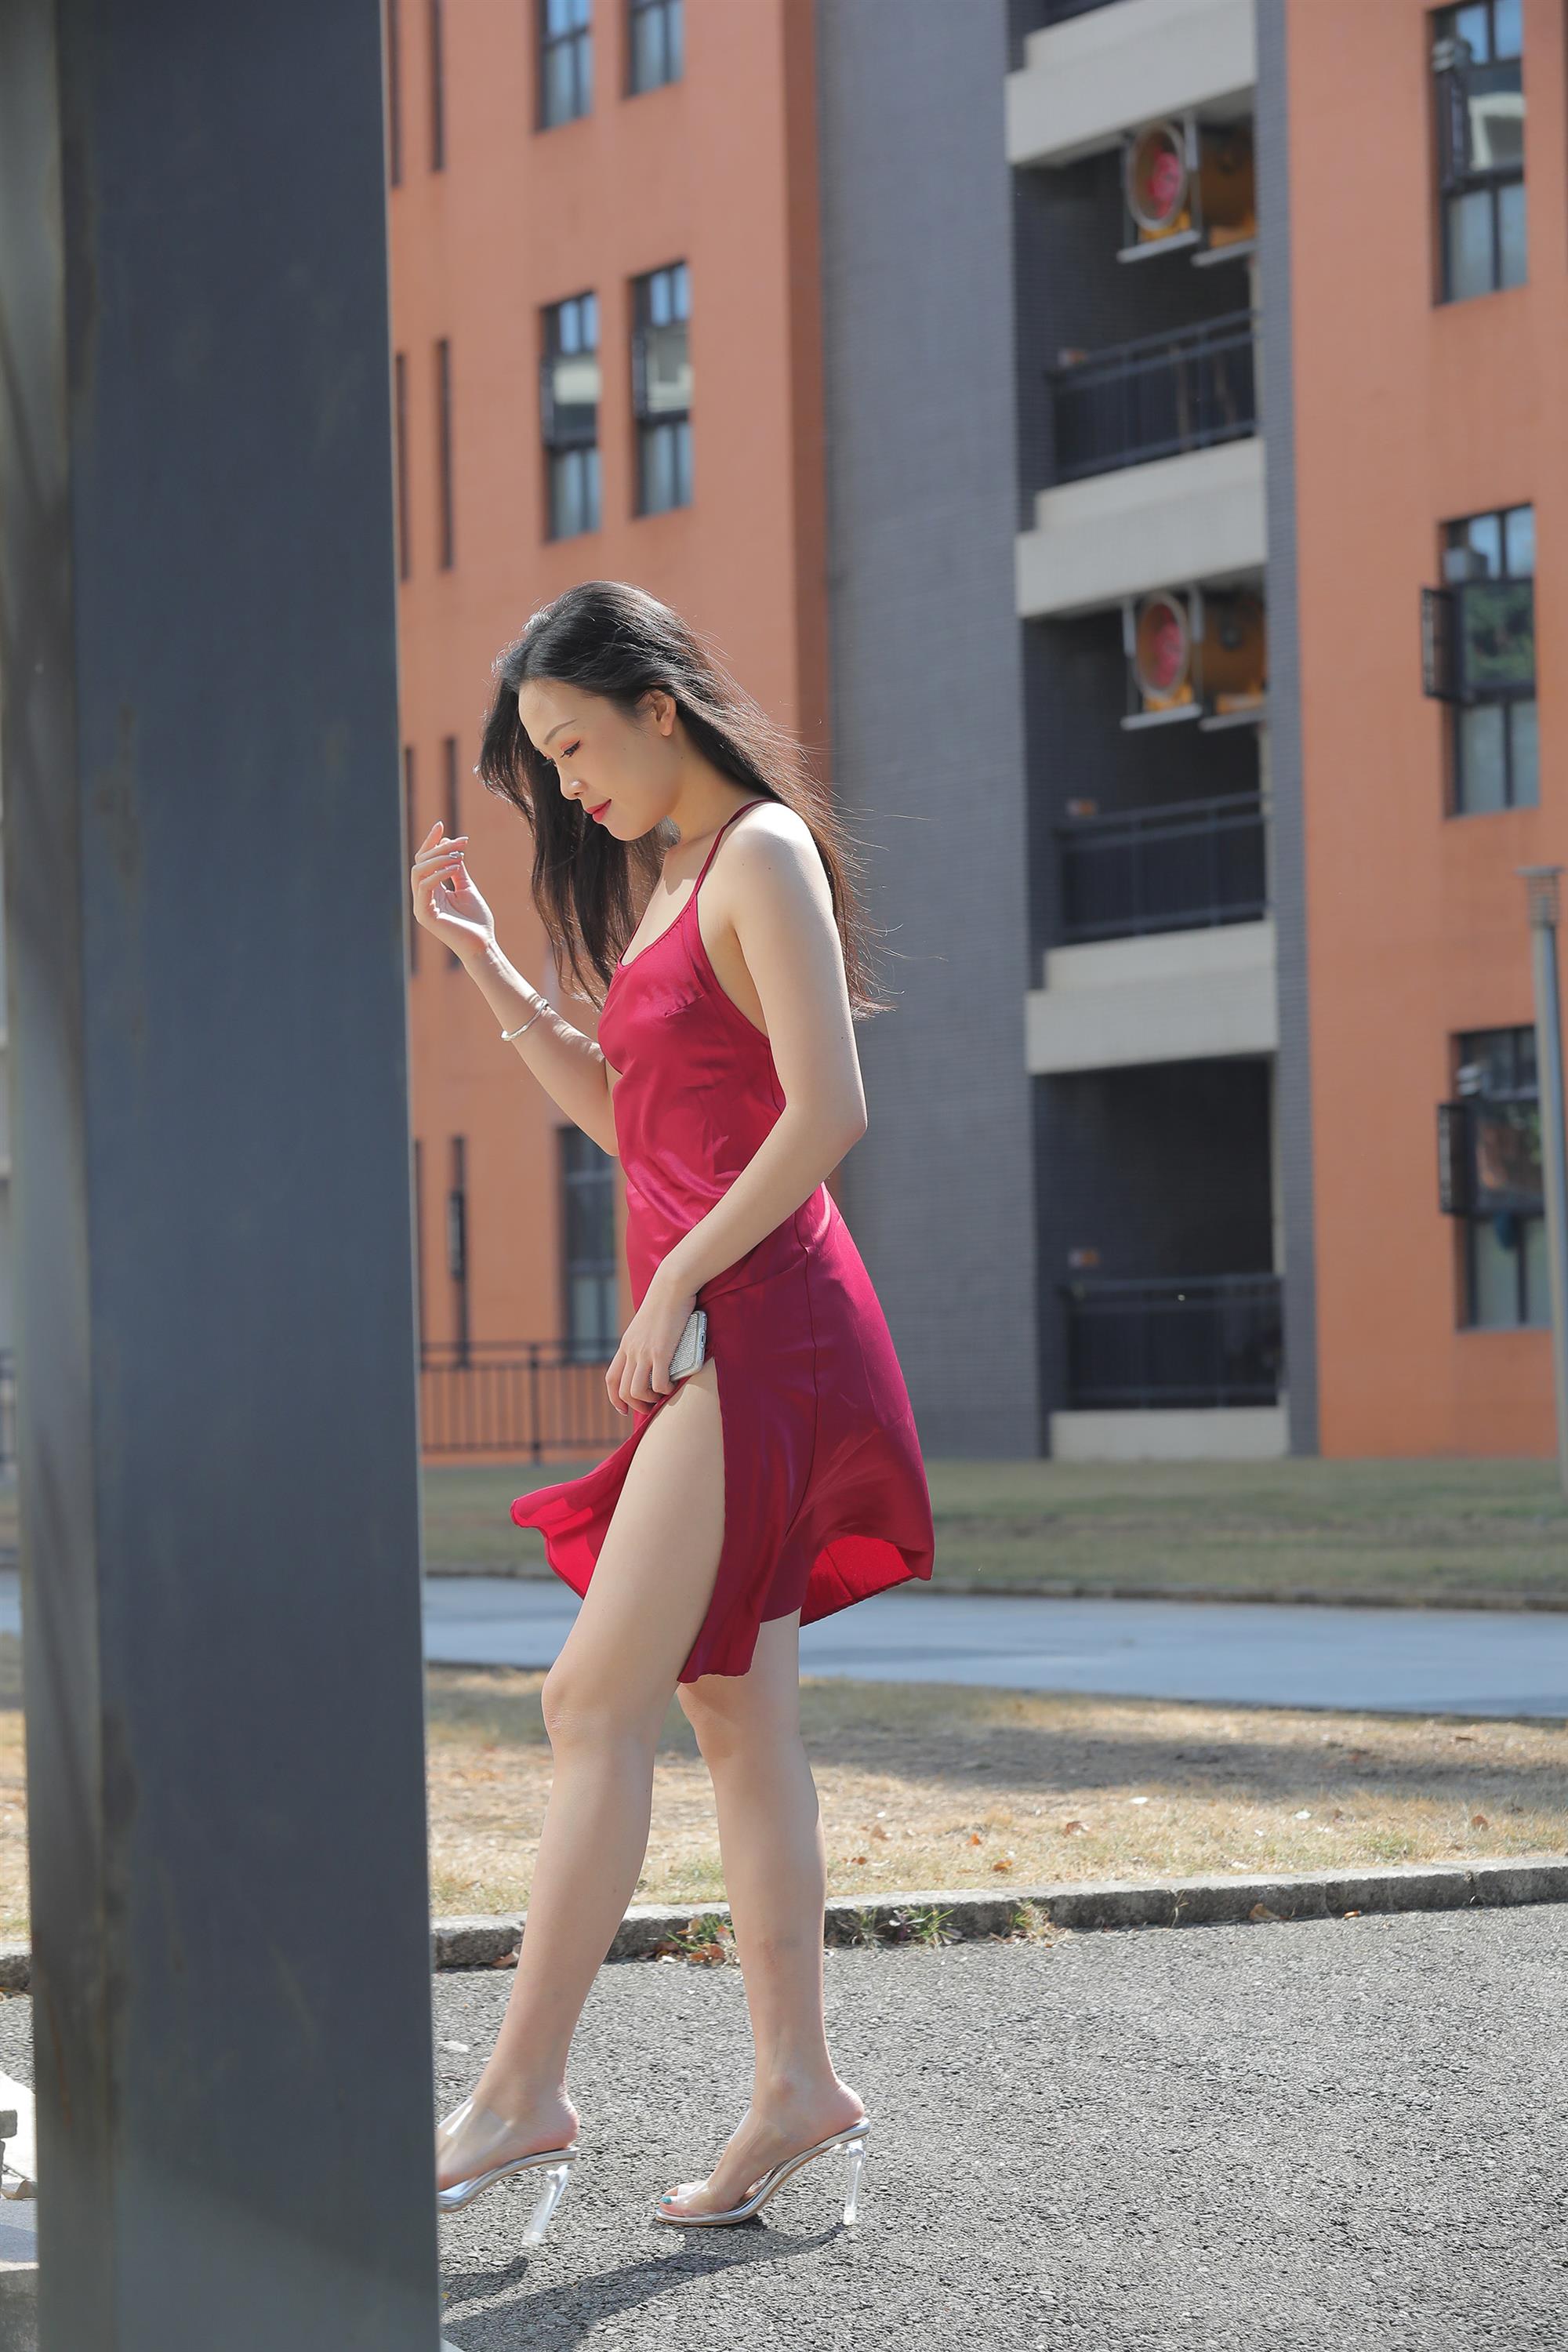 Street beauty in a red dress - 31.jpg